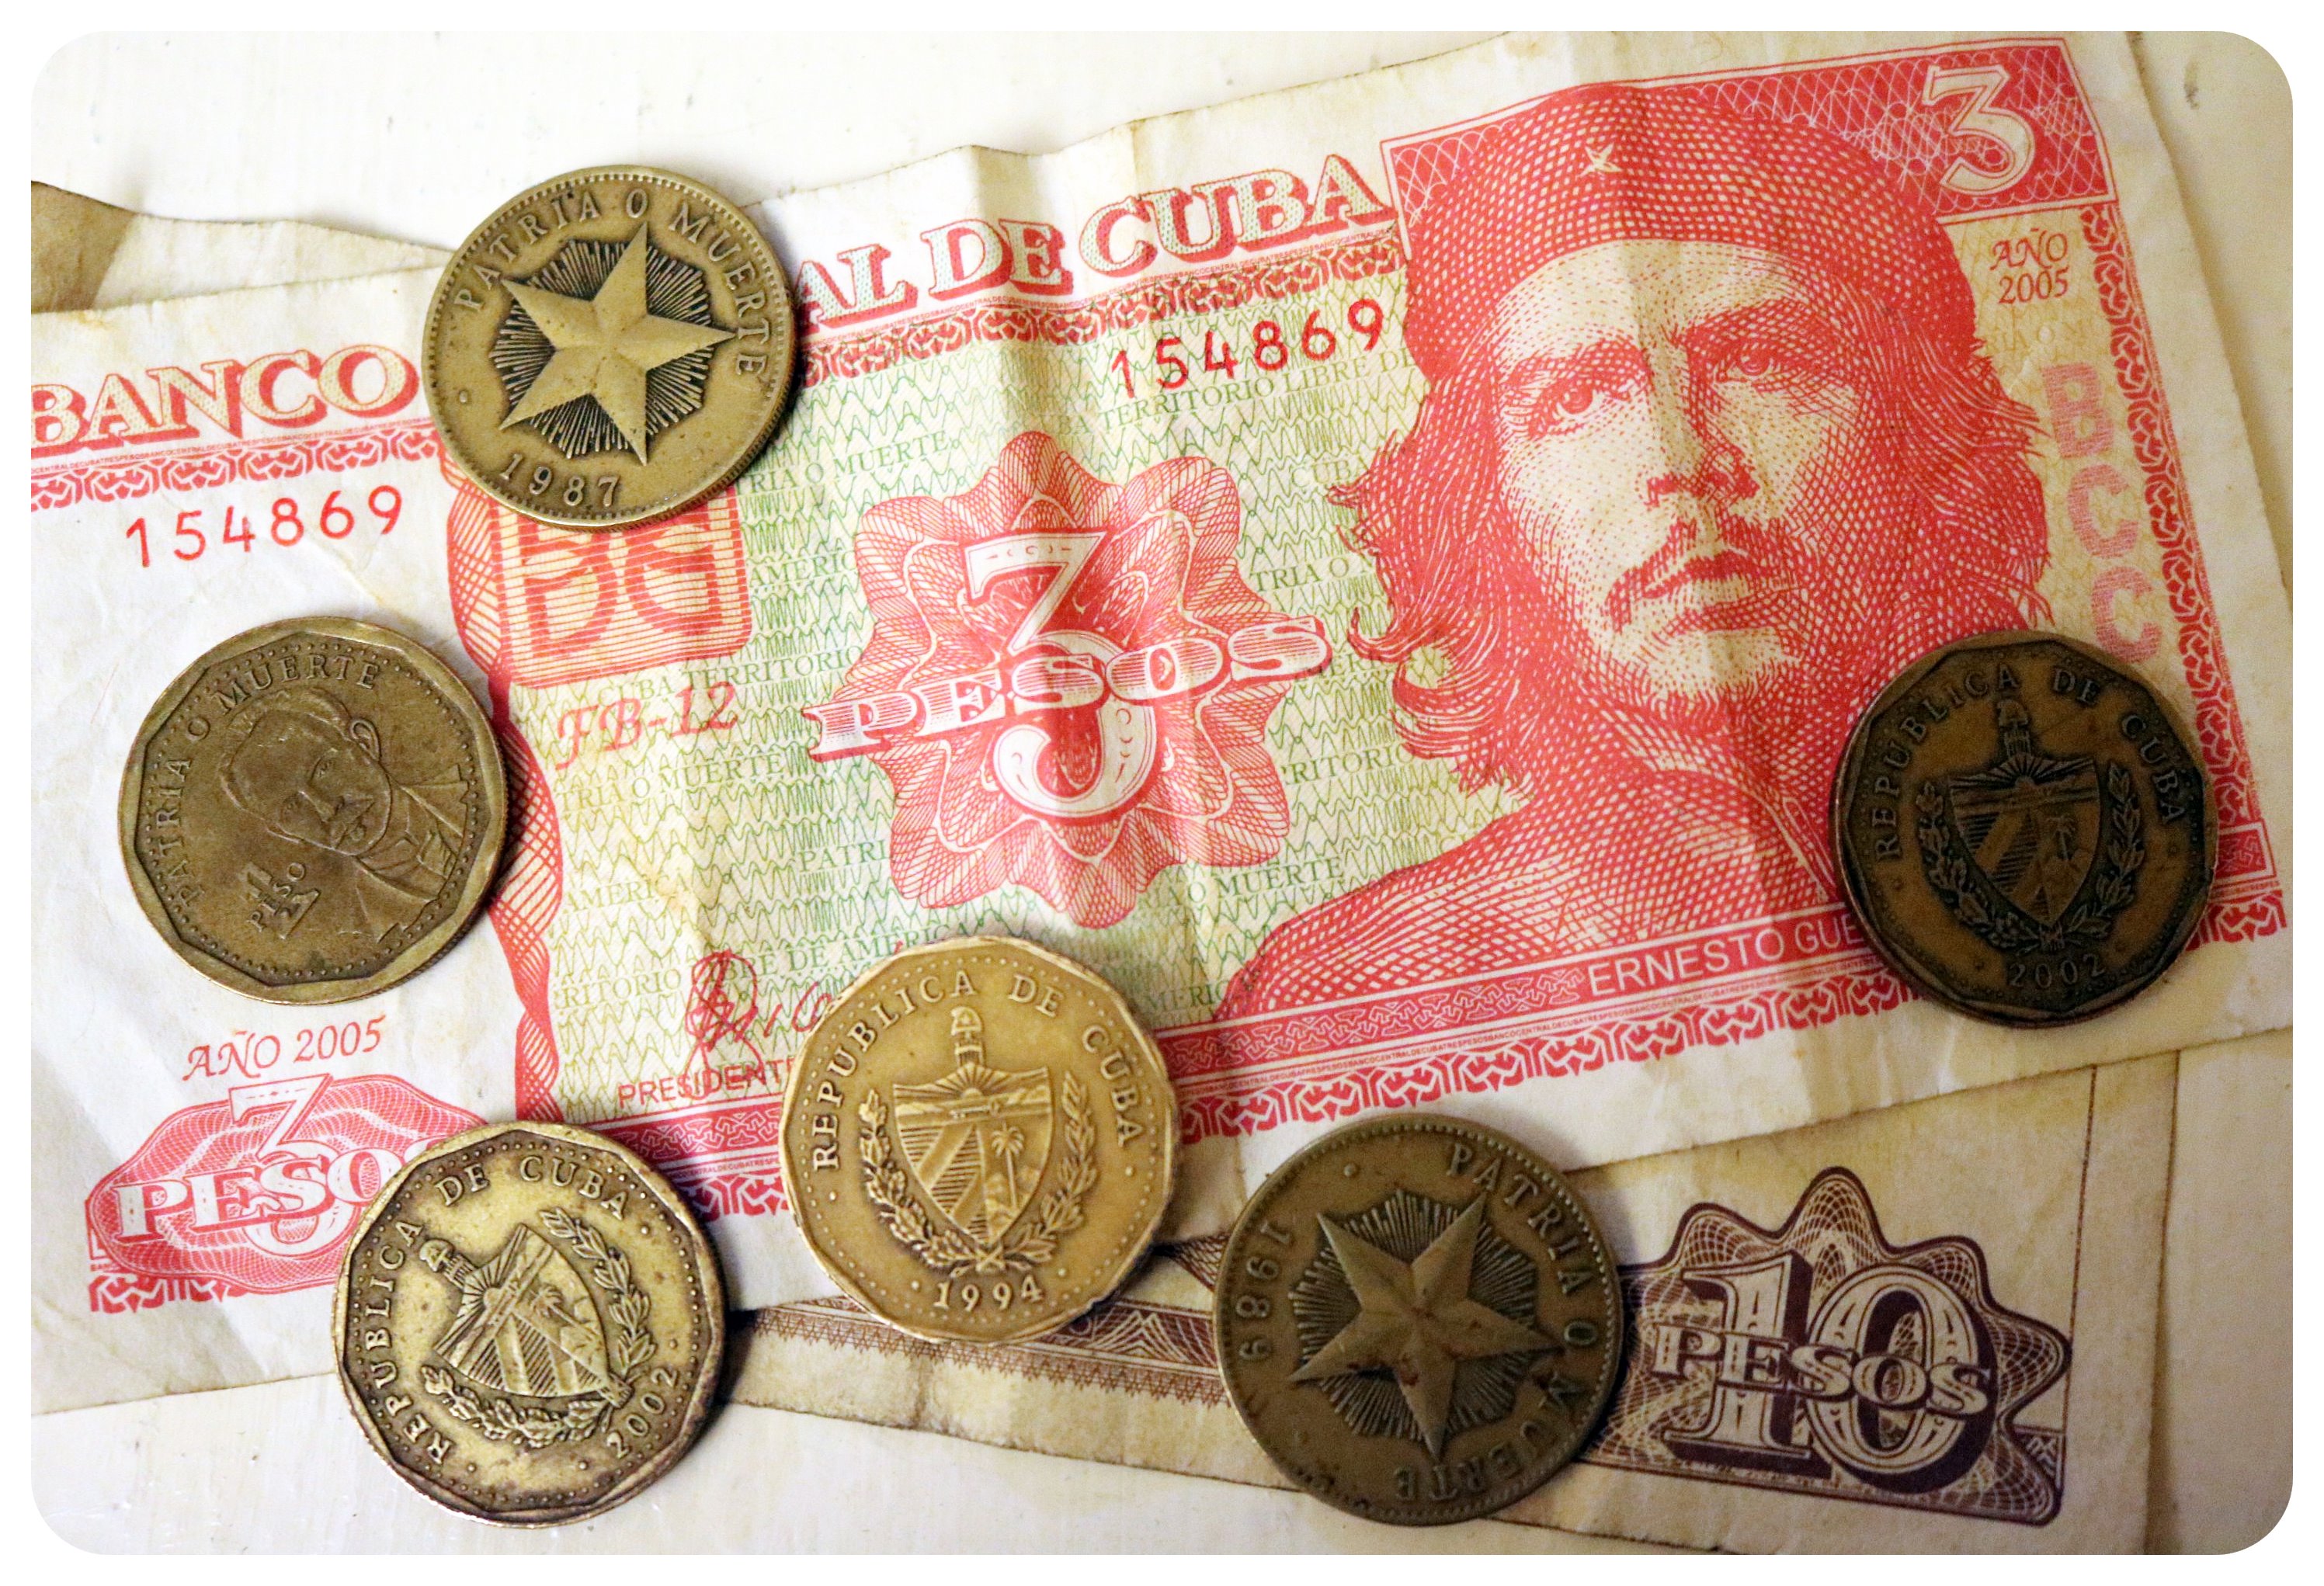 Küba, iki para biriminden birini önümüzdeki yılın başlarında kaldırmayı planlıyor